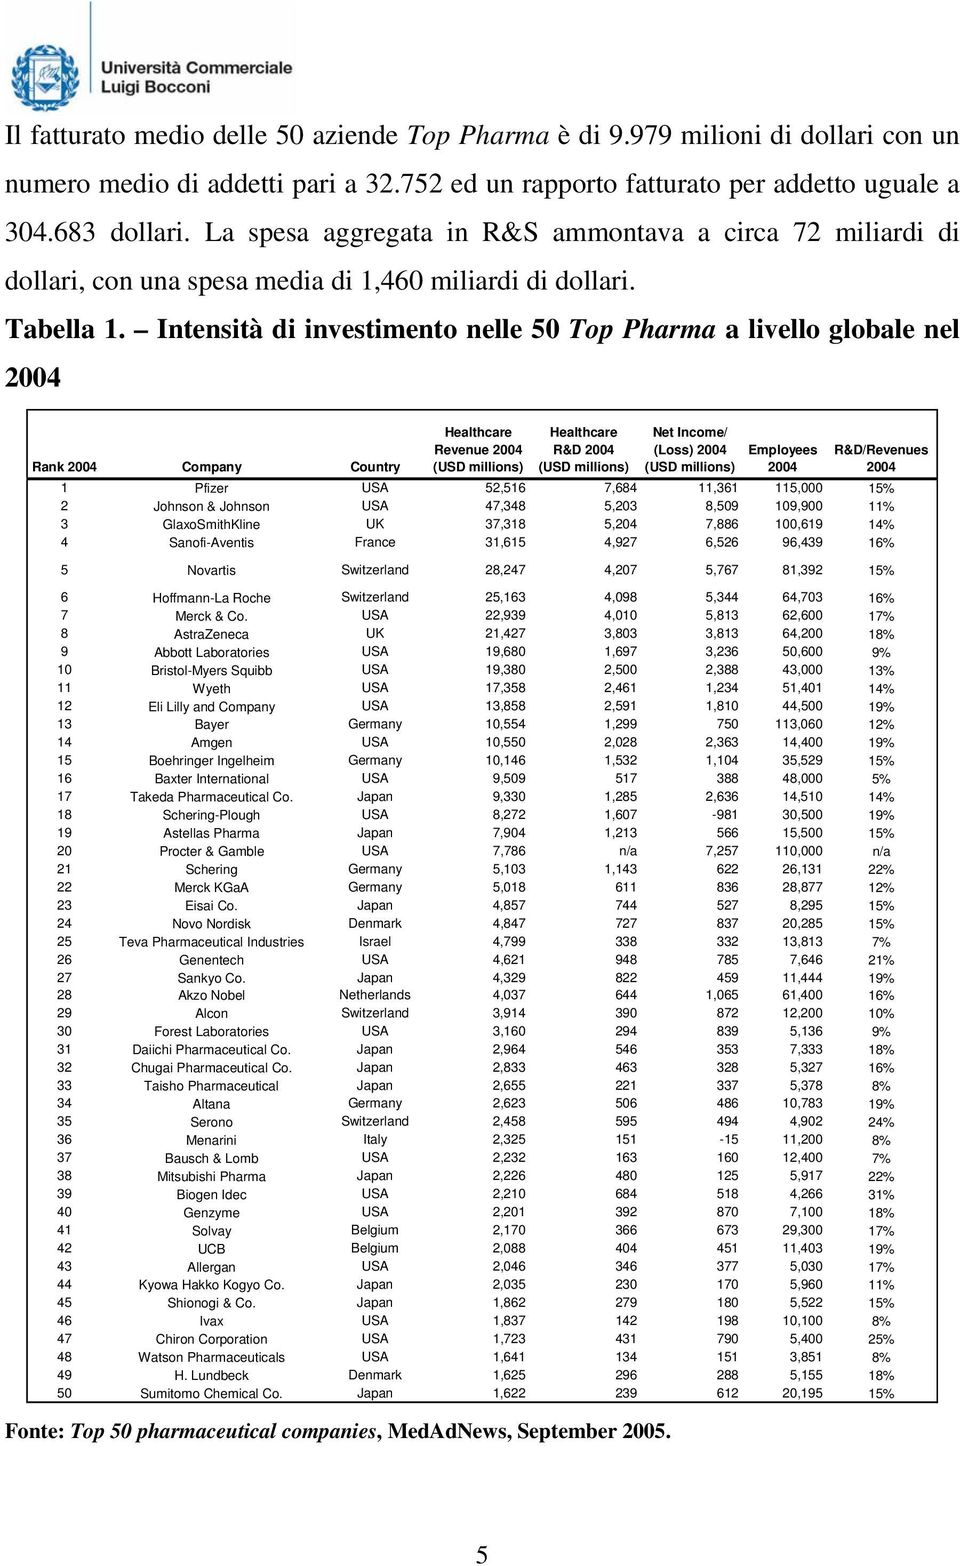 Intensità di investimento nelle 50 Top Pharma a livello globale nel 2004 Rank 2004 Company Country Healthcare Revenue 2004 (USD millions) Healthcare R&D 2004 (USD millions) Net Income/ (Loss) 2004